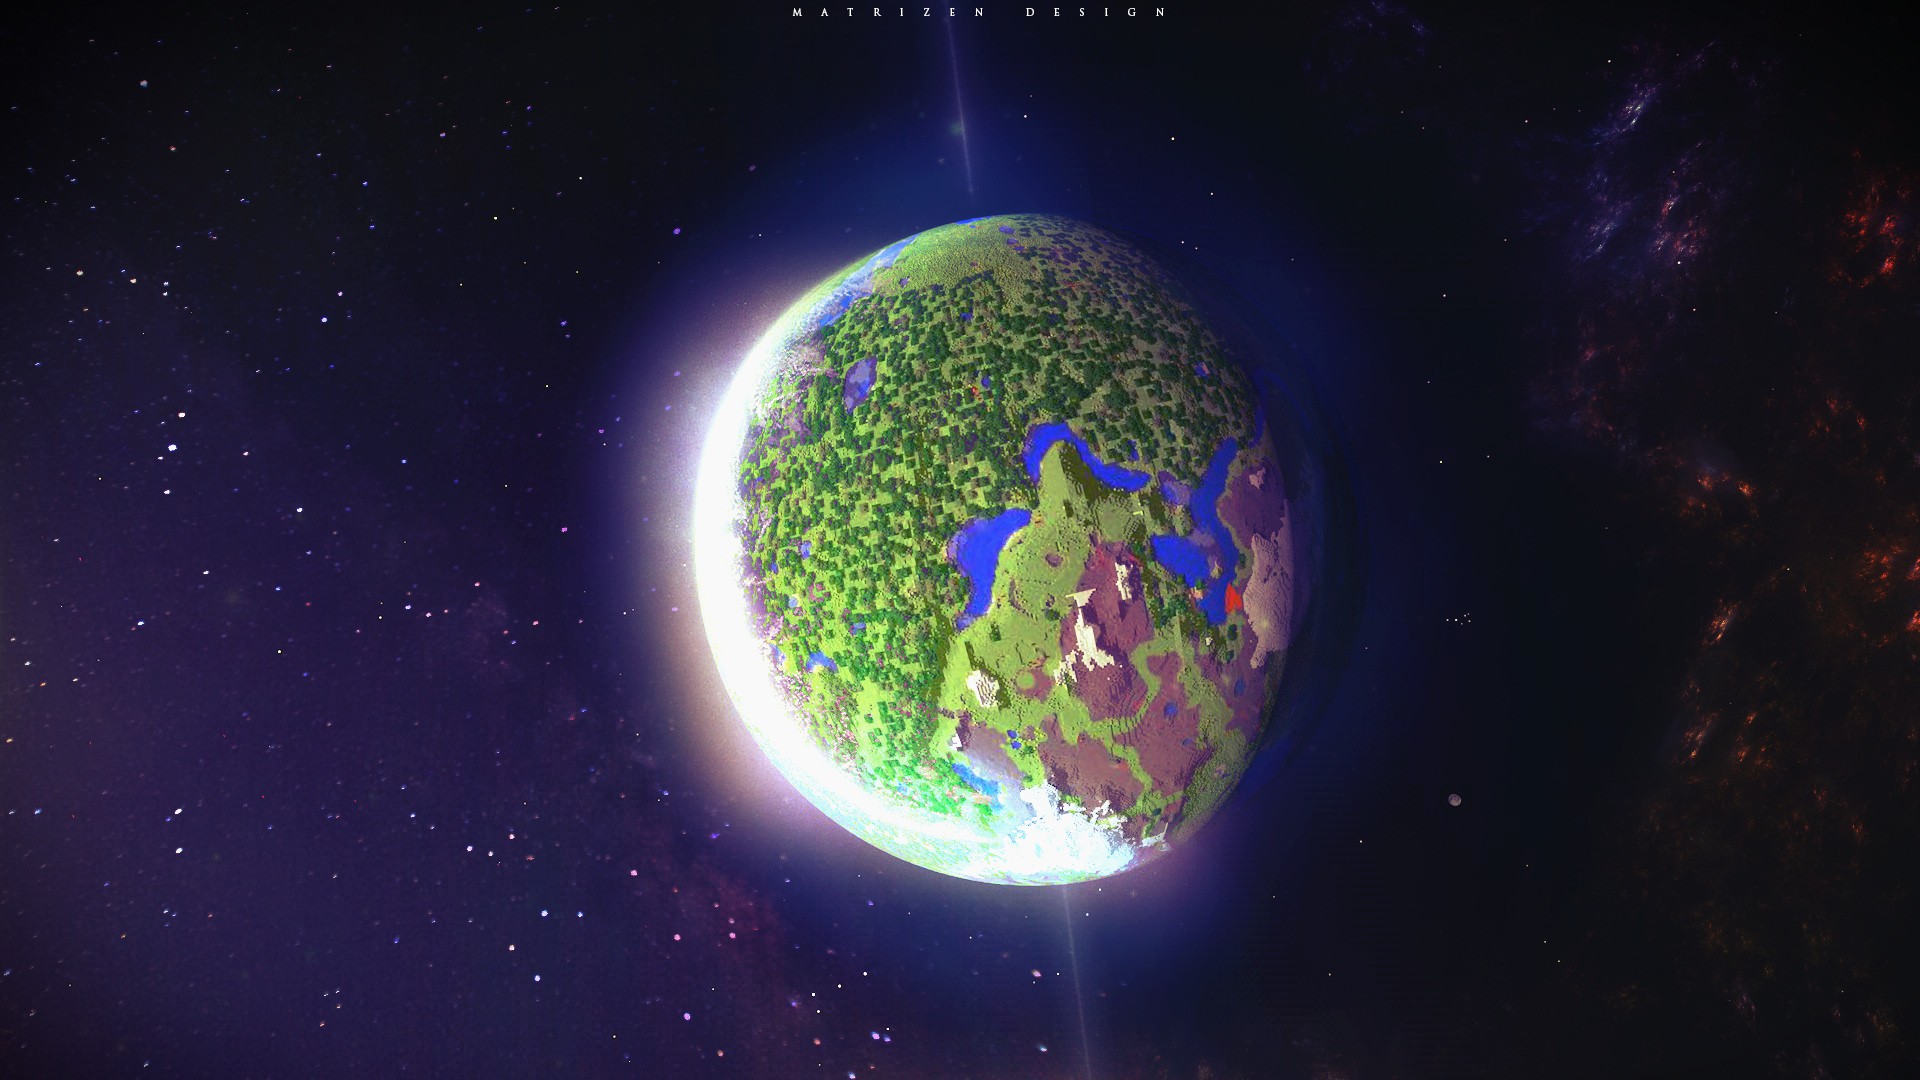 Pla Minecraft Space Stars Glowing Dark Digital Art 3d